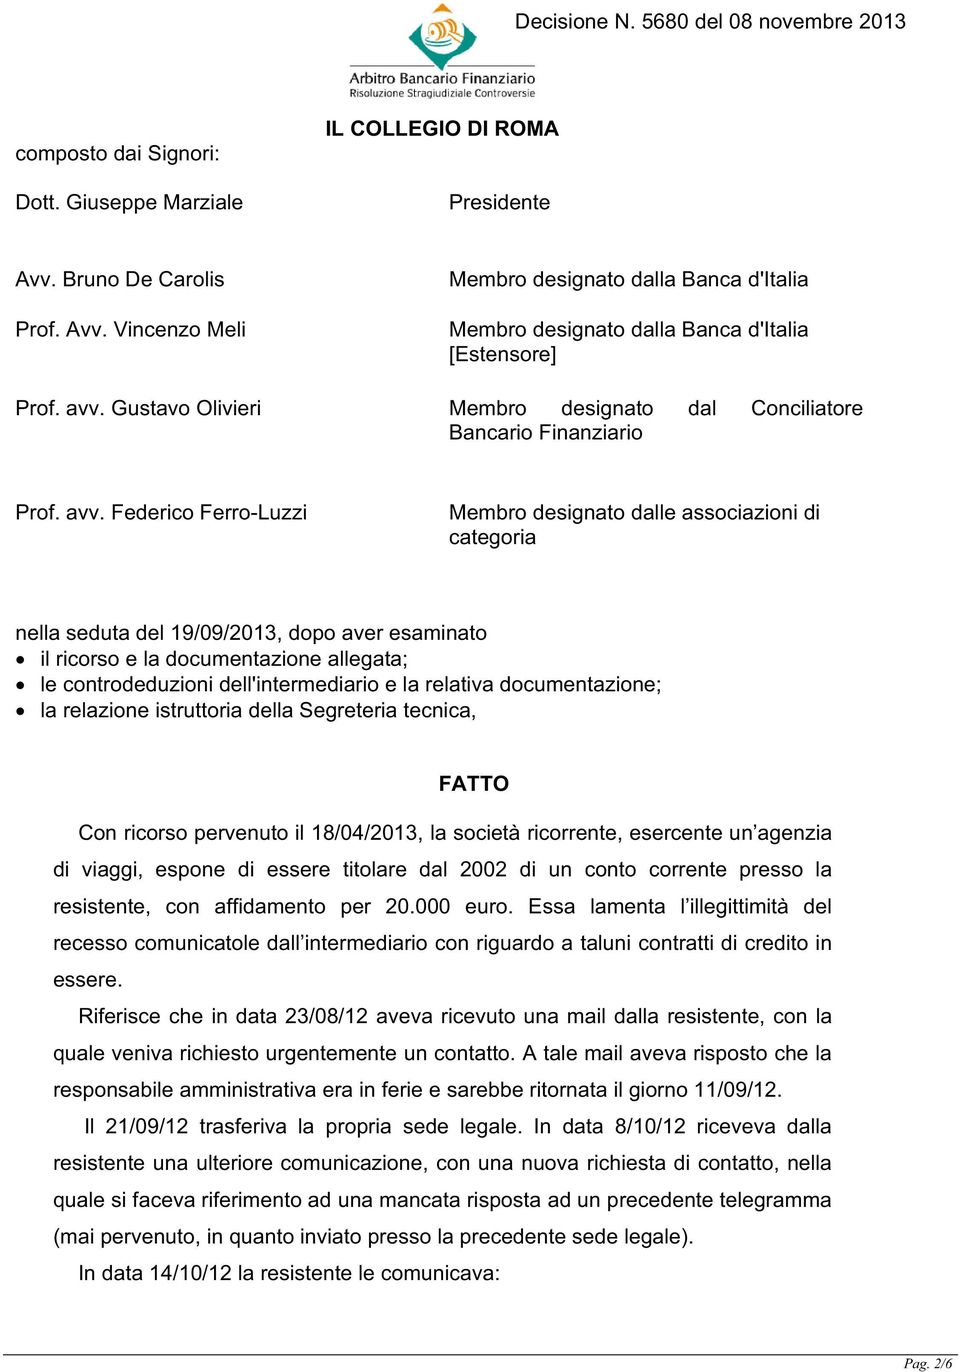 Federico Ferro-Luzzi Membro designato dalle associazioni di categoria nella seduta del 19/09/2013, dopo aver esaminato il ricorso e la documentazione allegata; le controdeduzioni dell'intermediario e